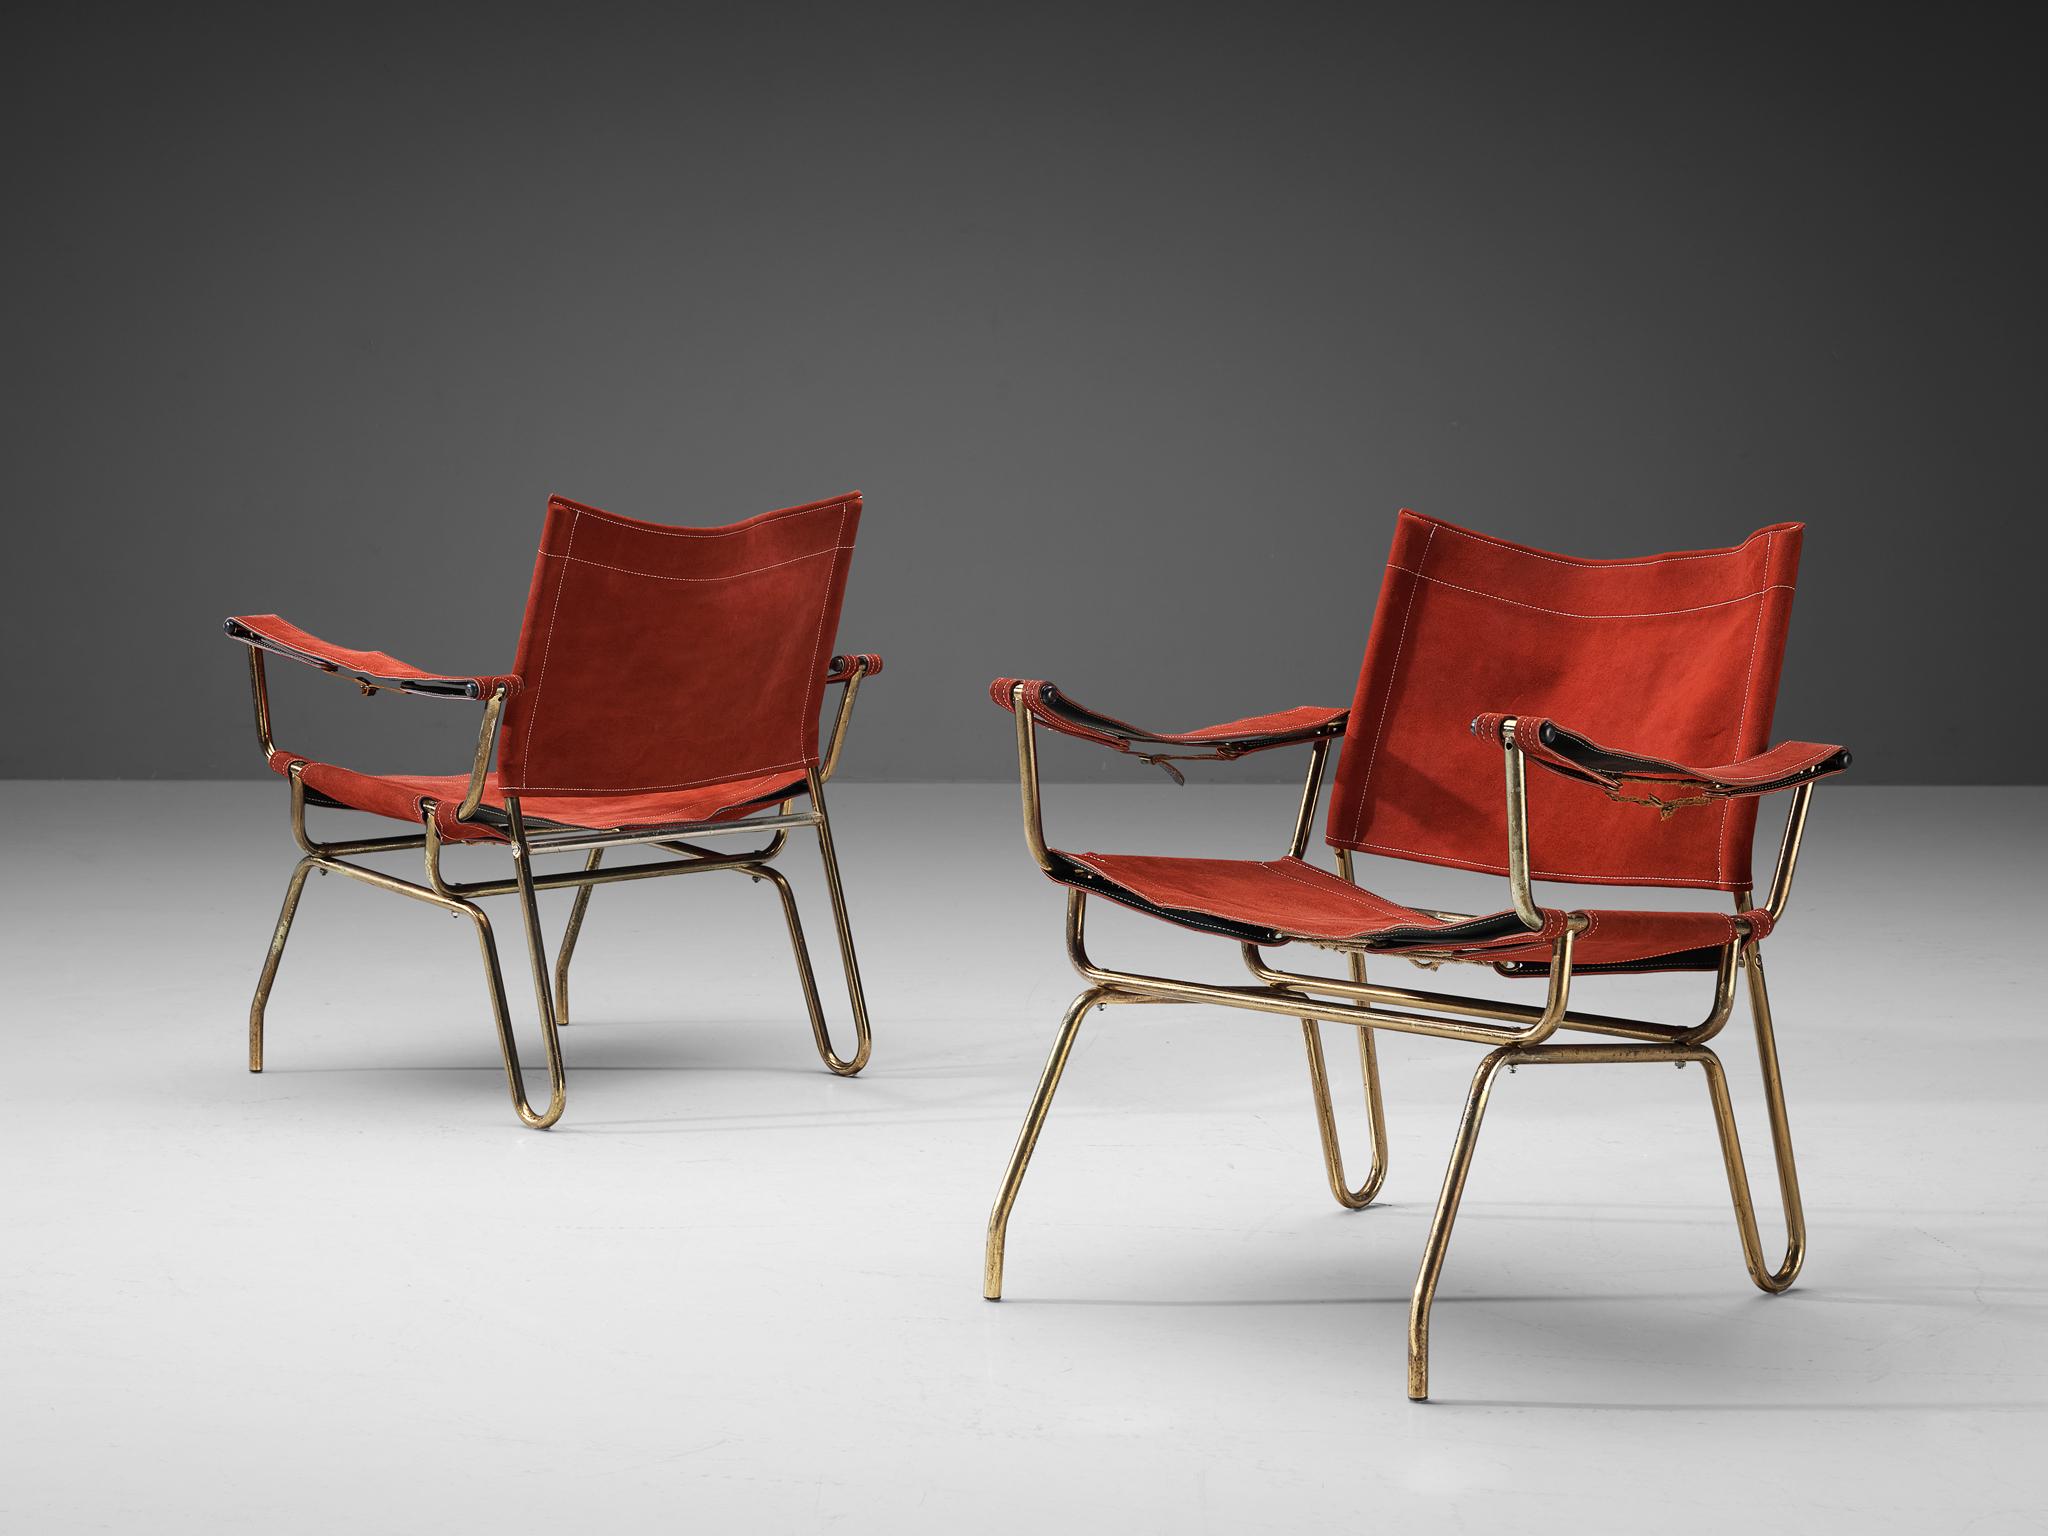 A. Dolleman für Metz & Co., Paar Sessel, Wildleder, Messing, Niederlande, 1960 

Dieses seltene Paar modernistischer Loungesessel verkörpert ein einzigartiges, ansprechendes Design. Der Rahmen aus Messingrohr ist glatt und schön in Form gebogen.